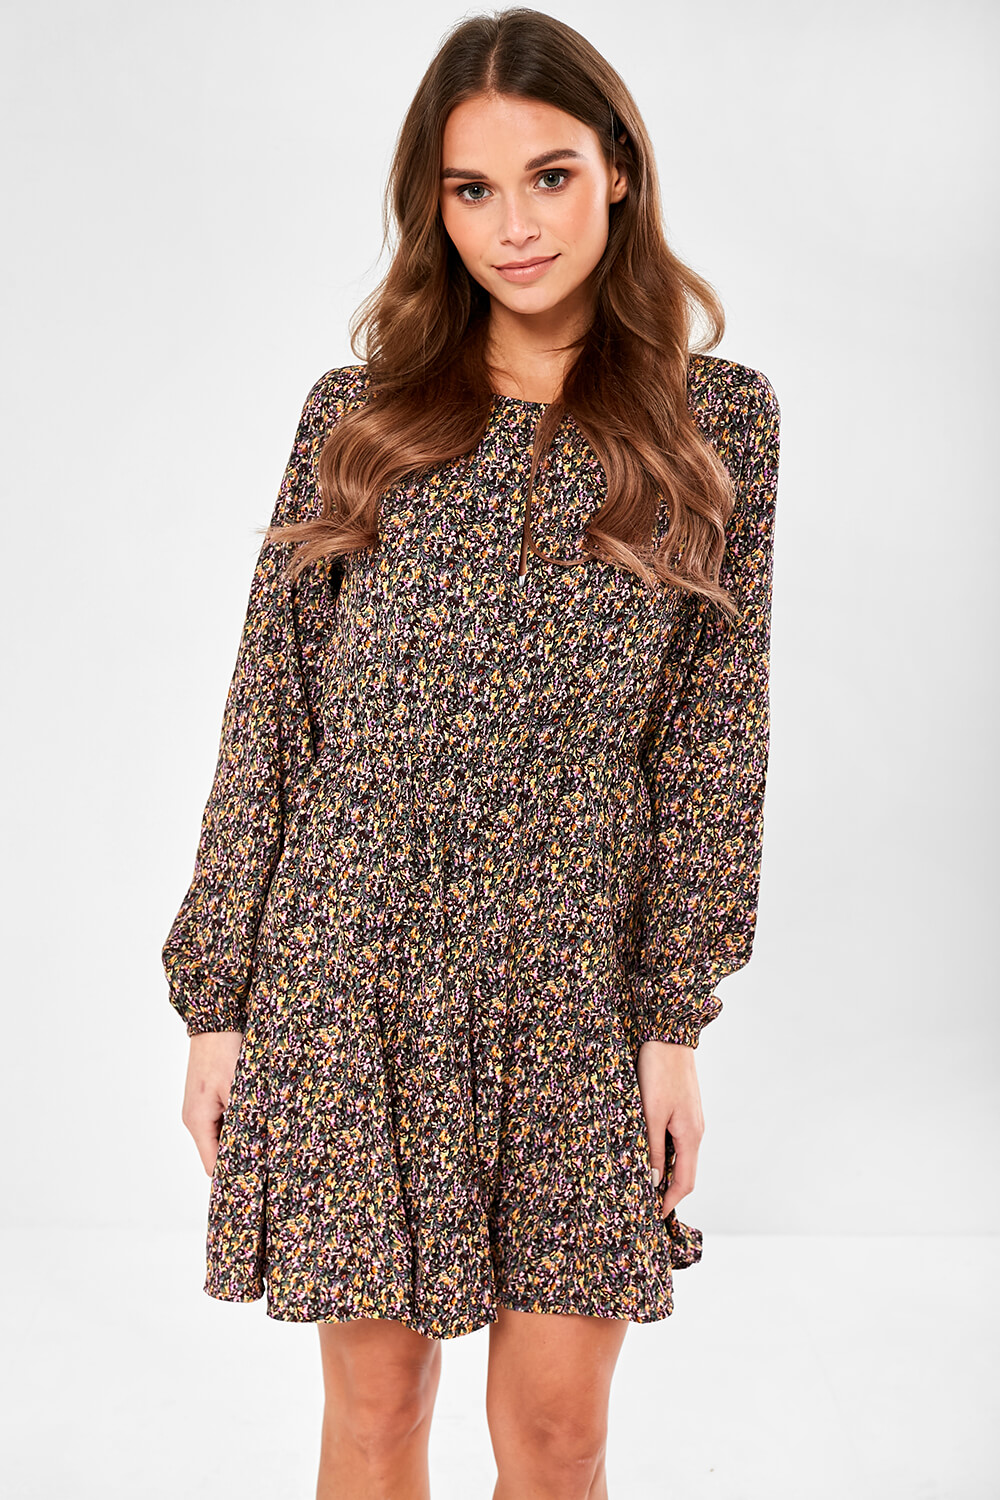 JDY Mia Leaf Print Dress in Dark Brown | iCLOTHING - iCLOTHING